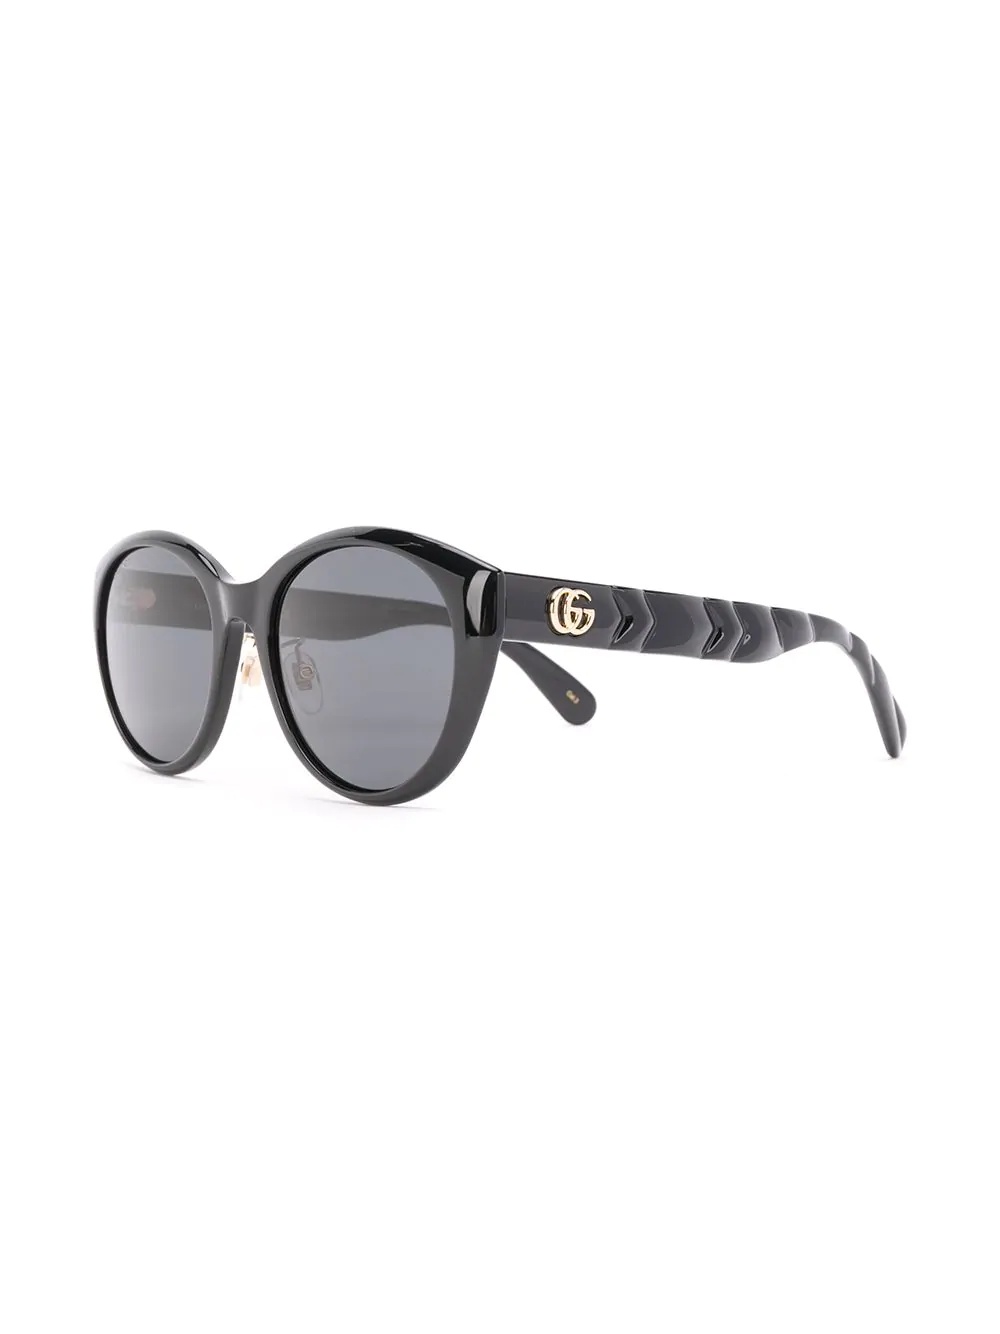 chevron-detail sunglasses - 2